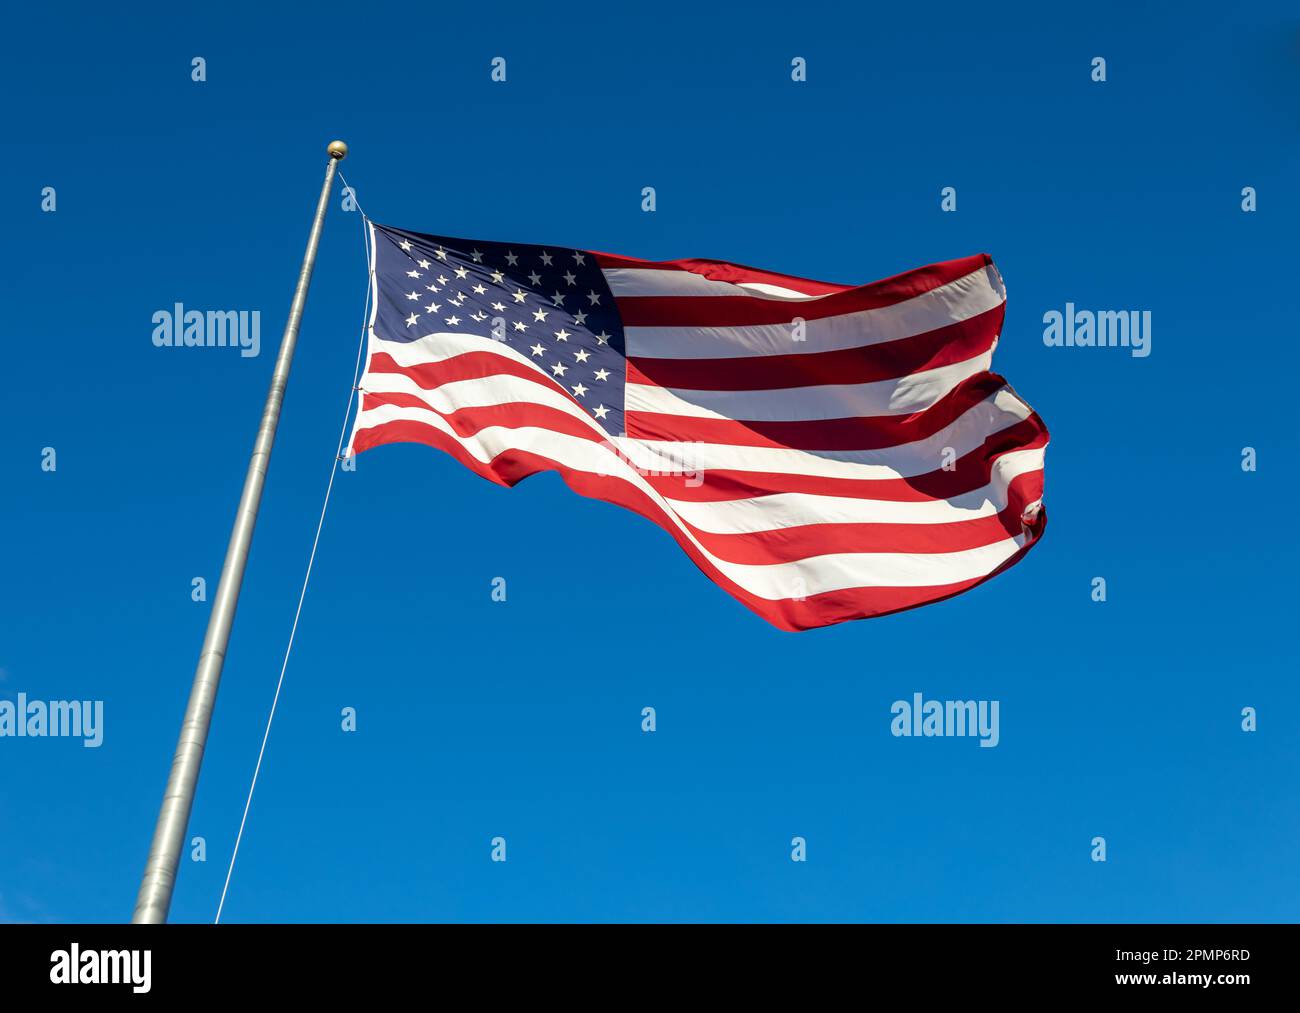 Vue rapprochée d'un drapeau américain agitant sur un mât, avec fond bleu ciel Banque D'Images